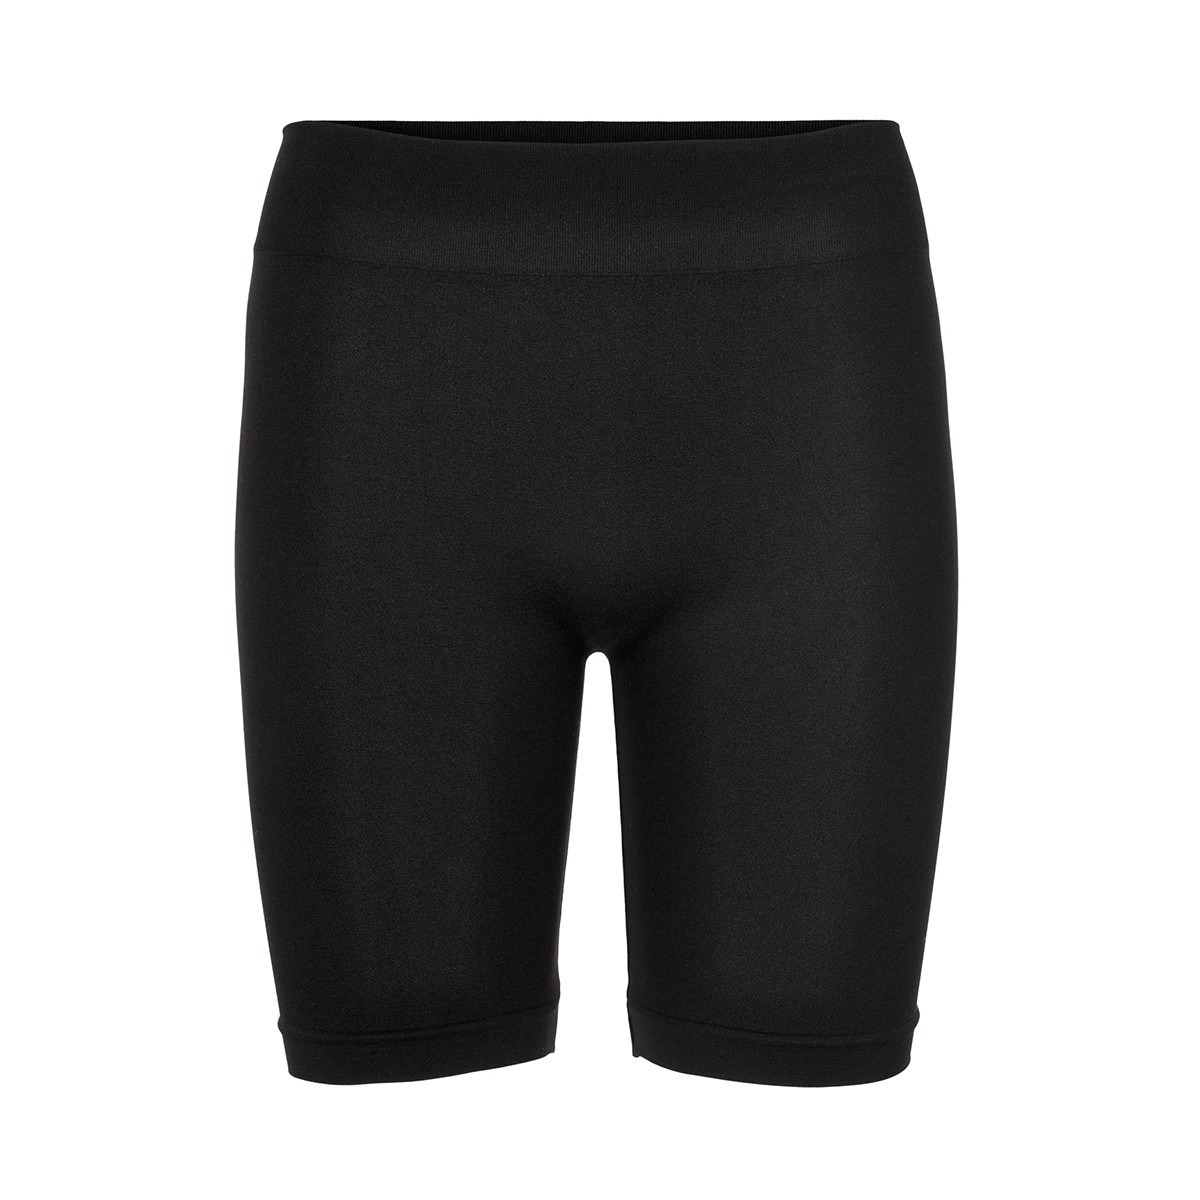 14: Decoy Seamless Shorts, Farve: Sort, Størrelse: M/L, Dame